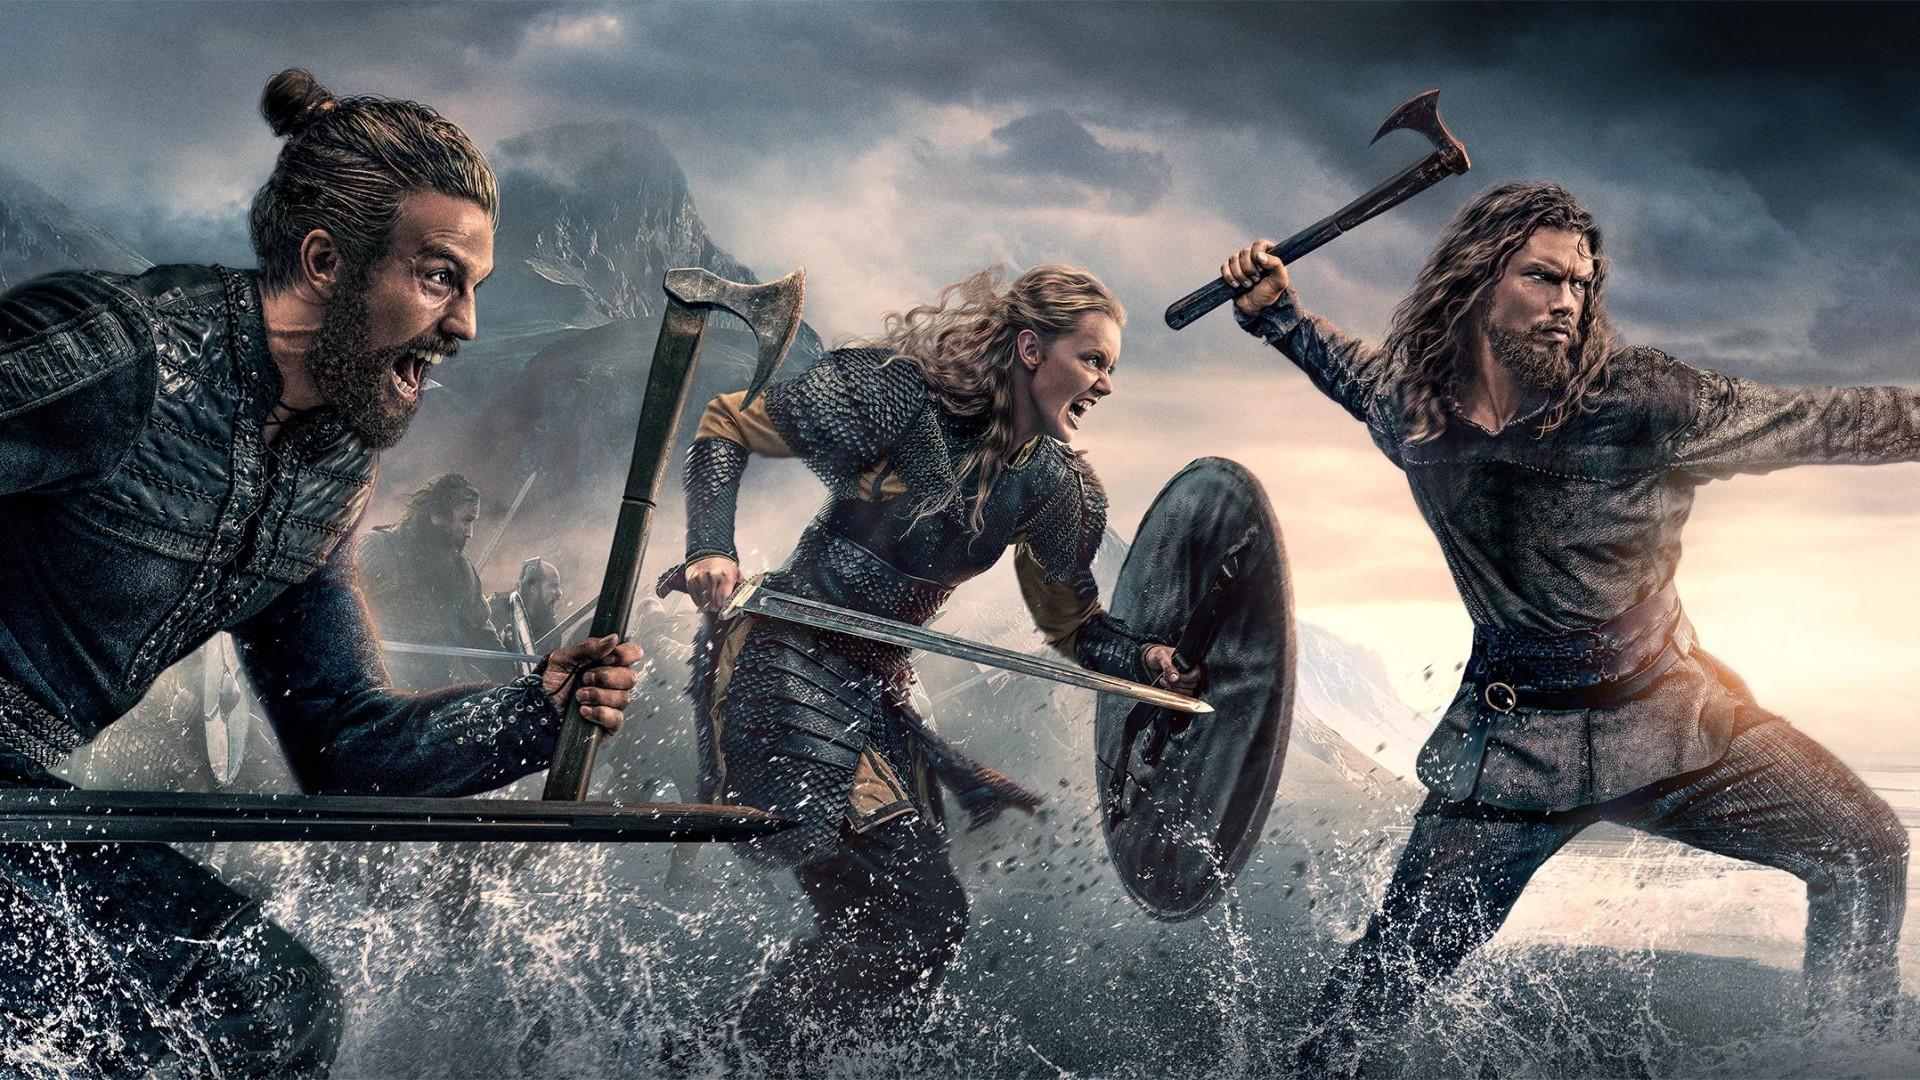 Vikings : Valhalla